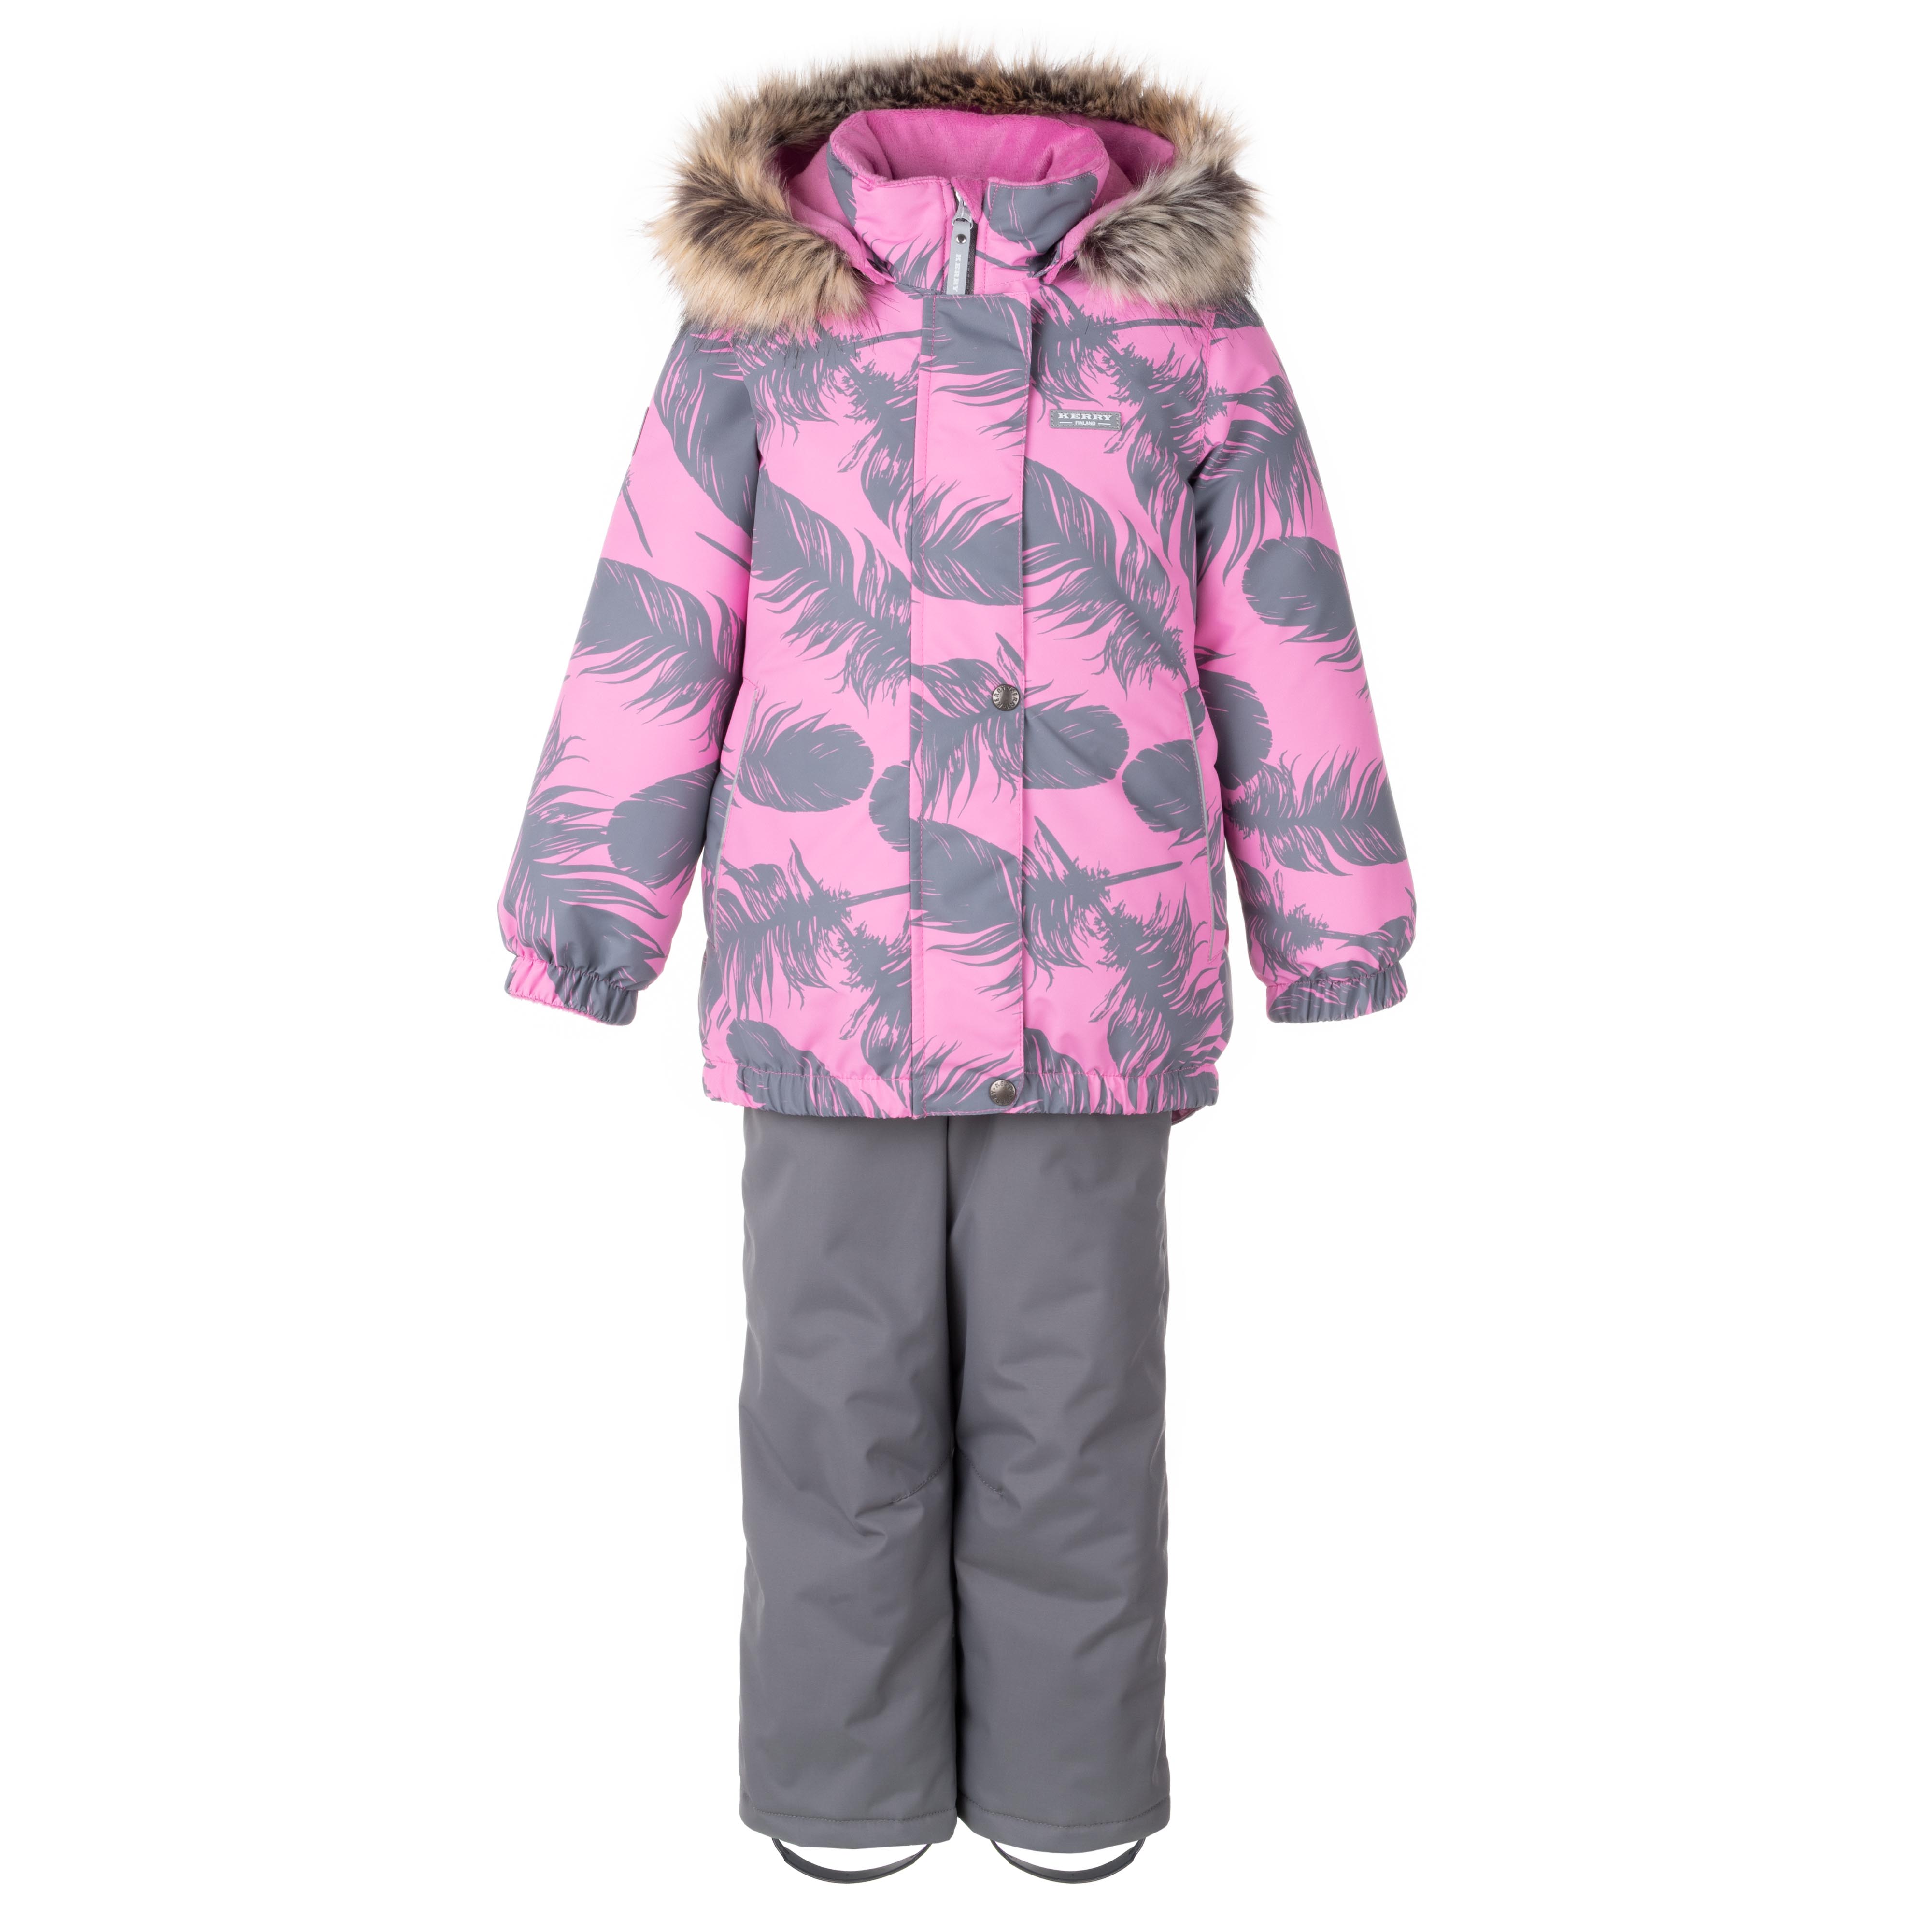 Комплект верхней одежды KERRY K23420 A, серый, розовый, 128